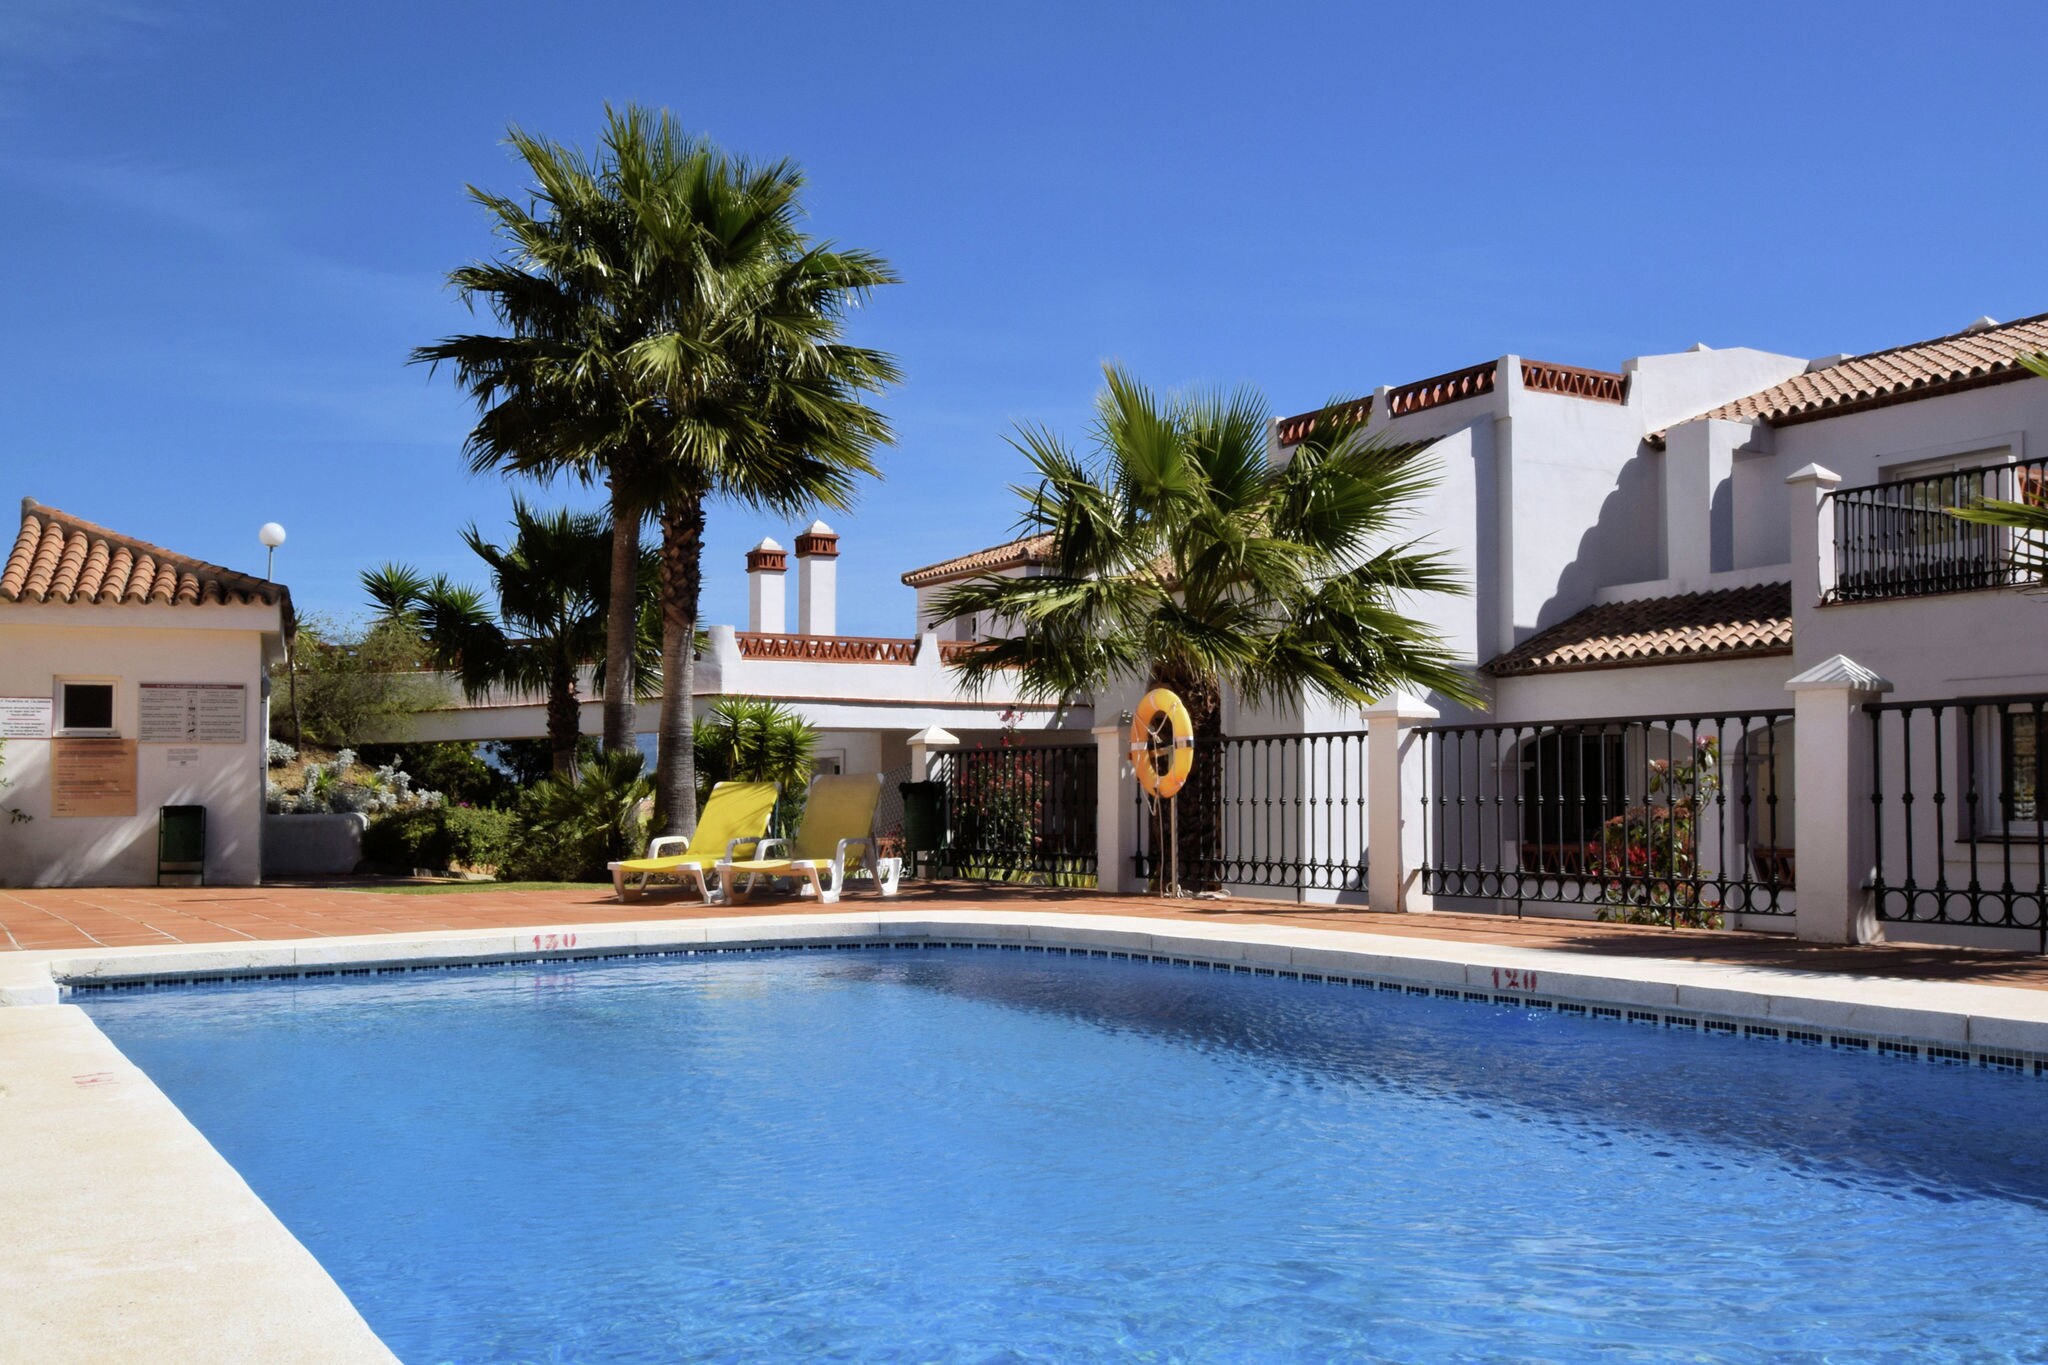 Appartement avec piscine partagée près de la mer, Andalousie